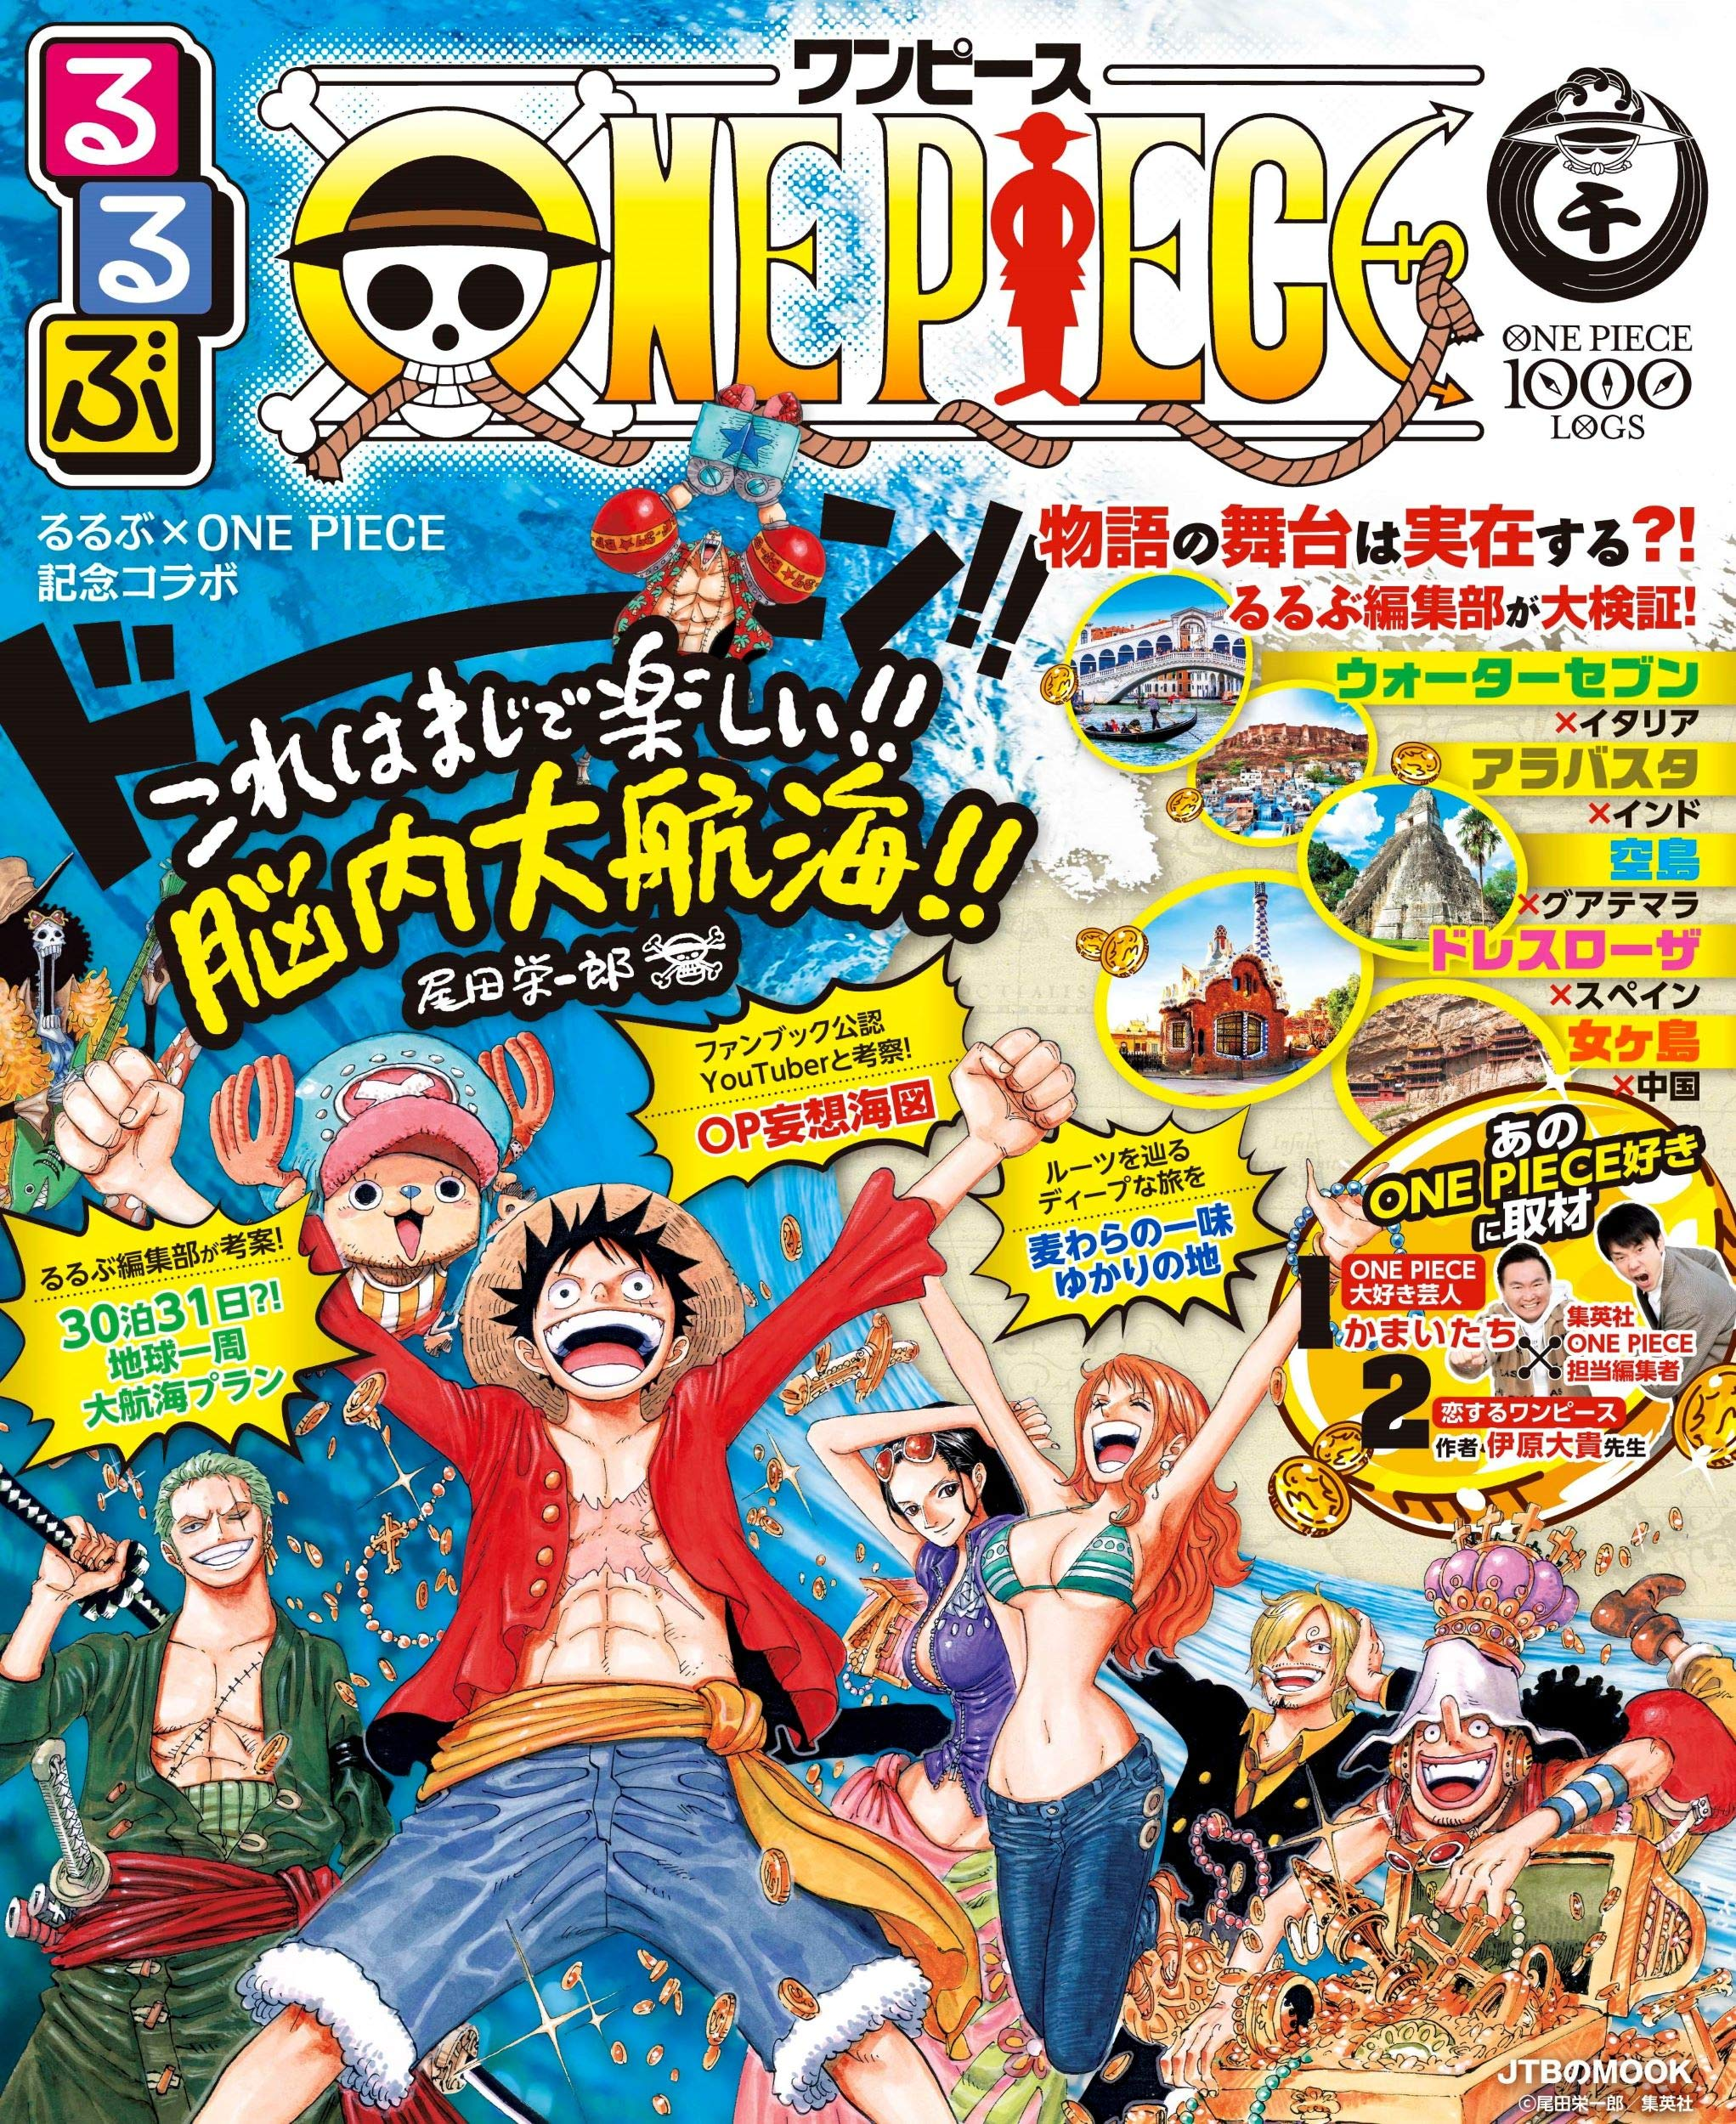 Rurubu One Piece One Piece Wiki Fandom